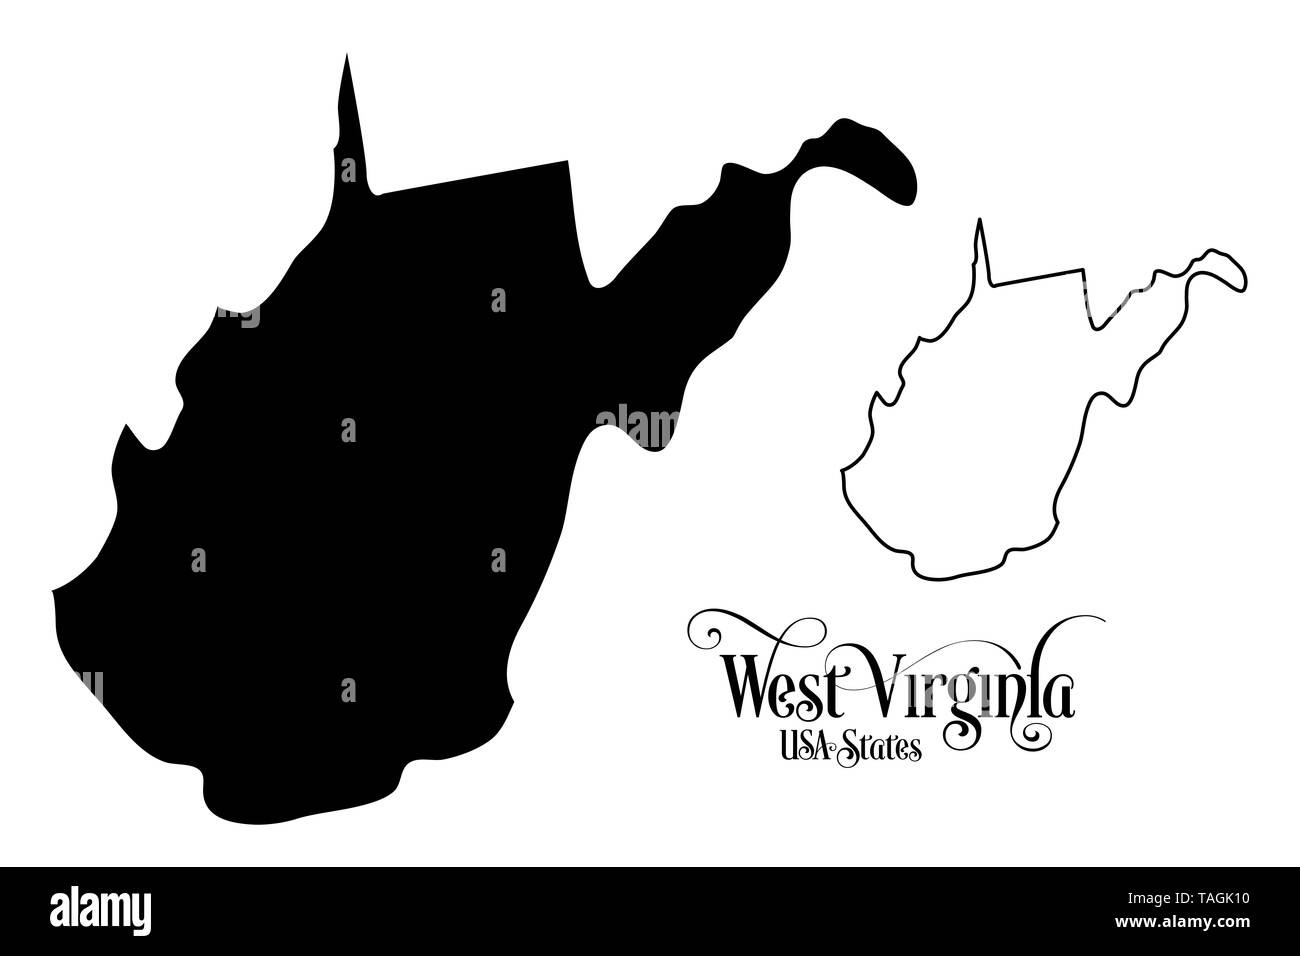 Carte des États-Unis d'Amérique (USA) l'État de Virginie occidentale - Illustration sur fond blanc. Banque D'Images